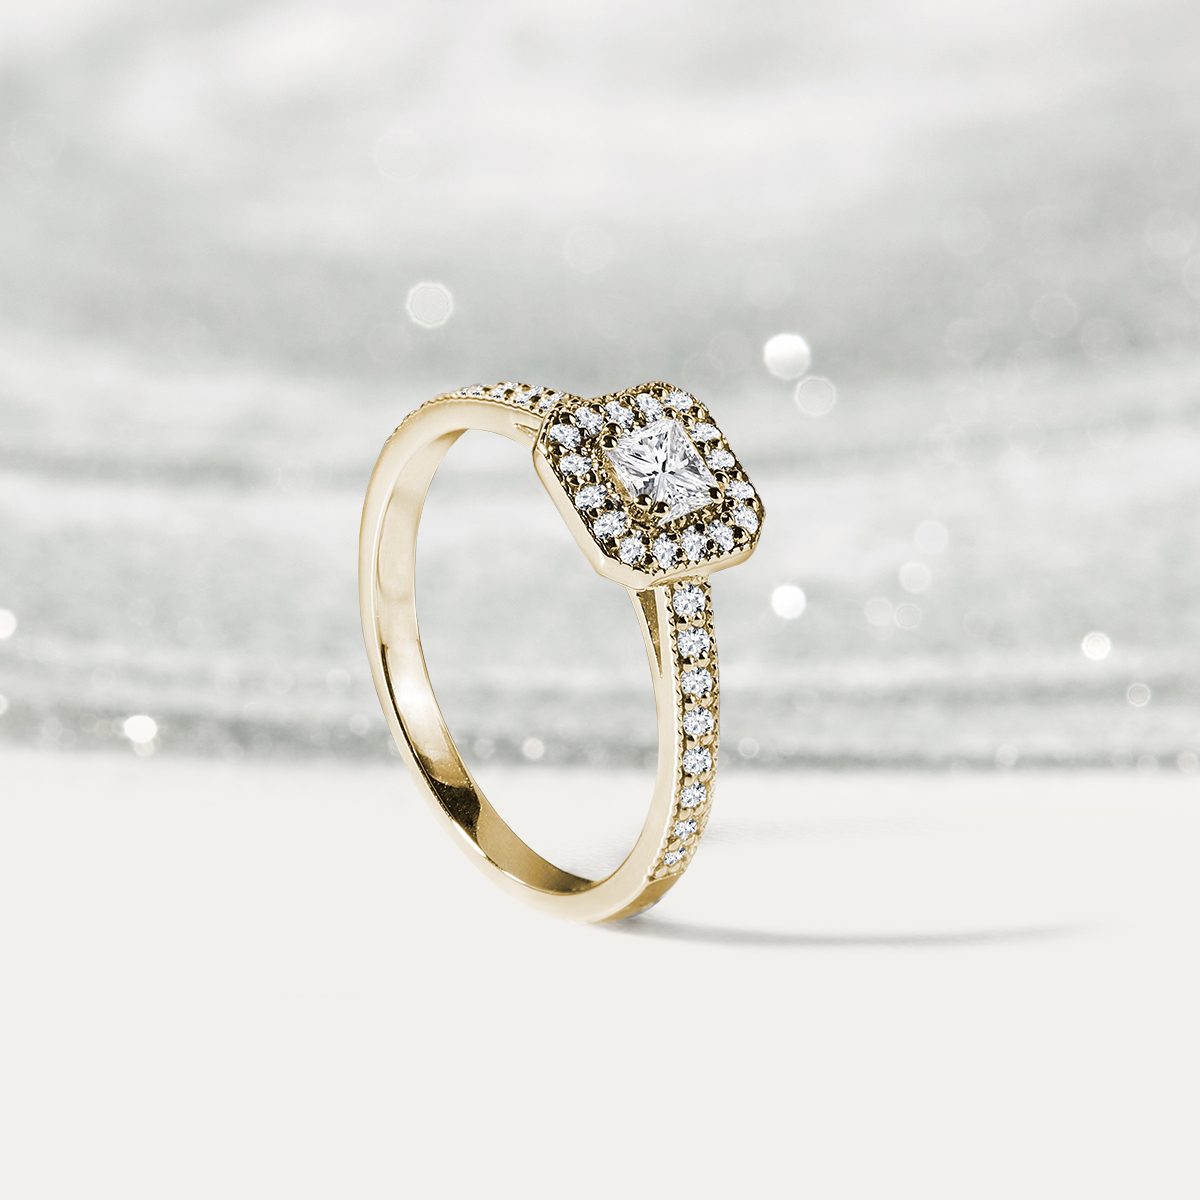  Luxusný diamantový prsteň v žltom 14k zlate - KLENOTA